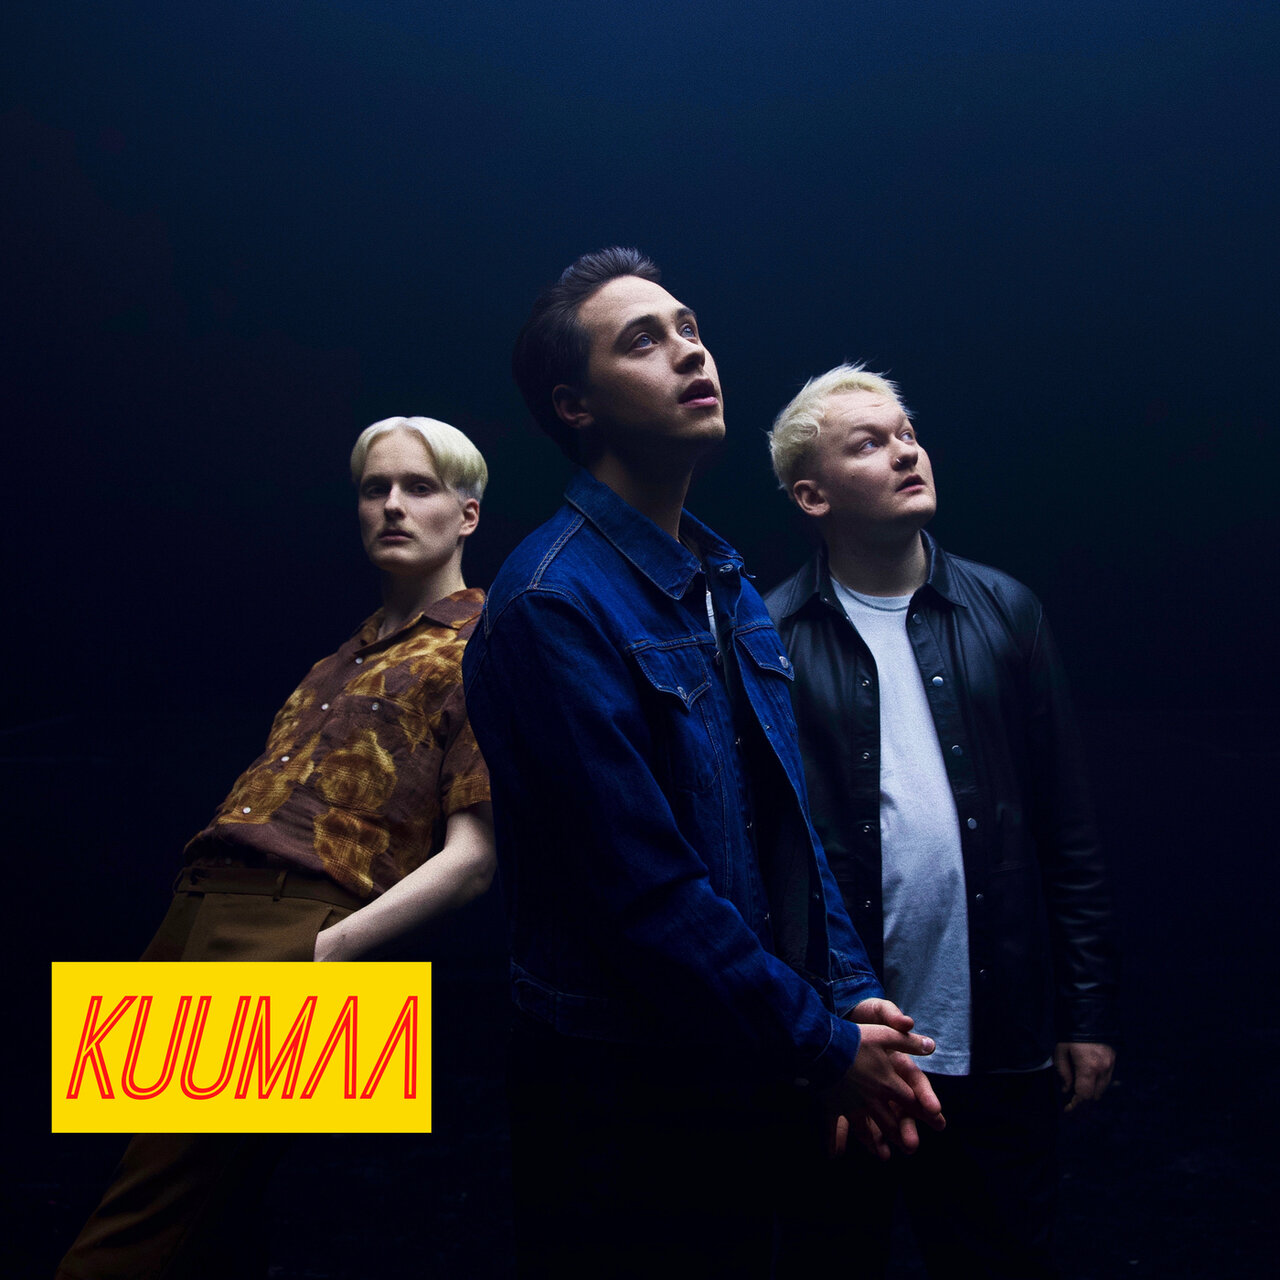 KUUMAA — Ylivoimainen cover artwork